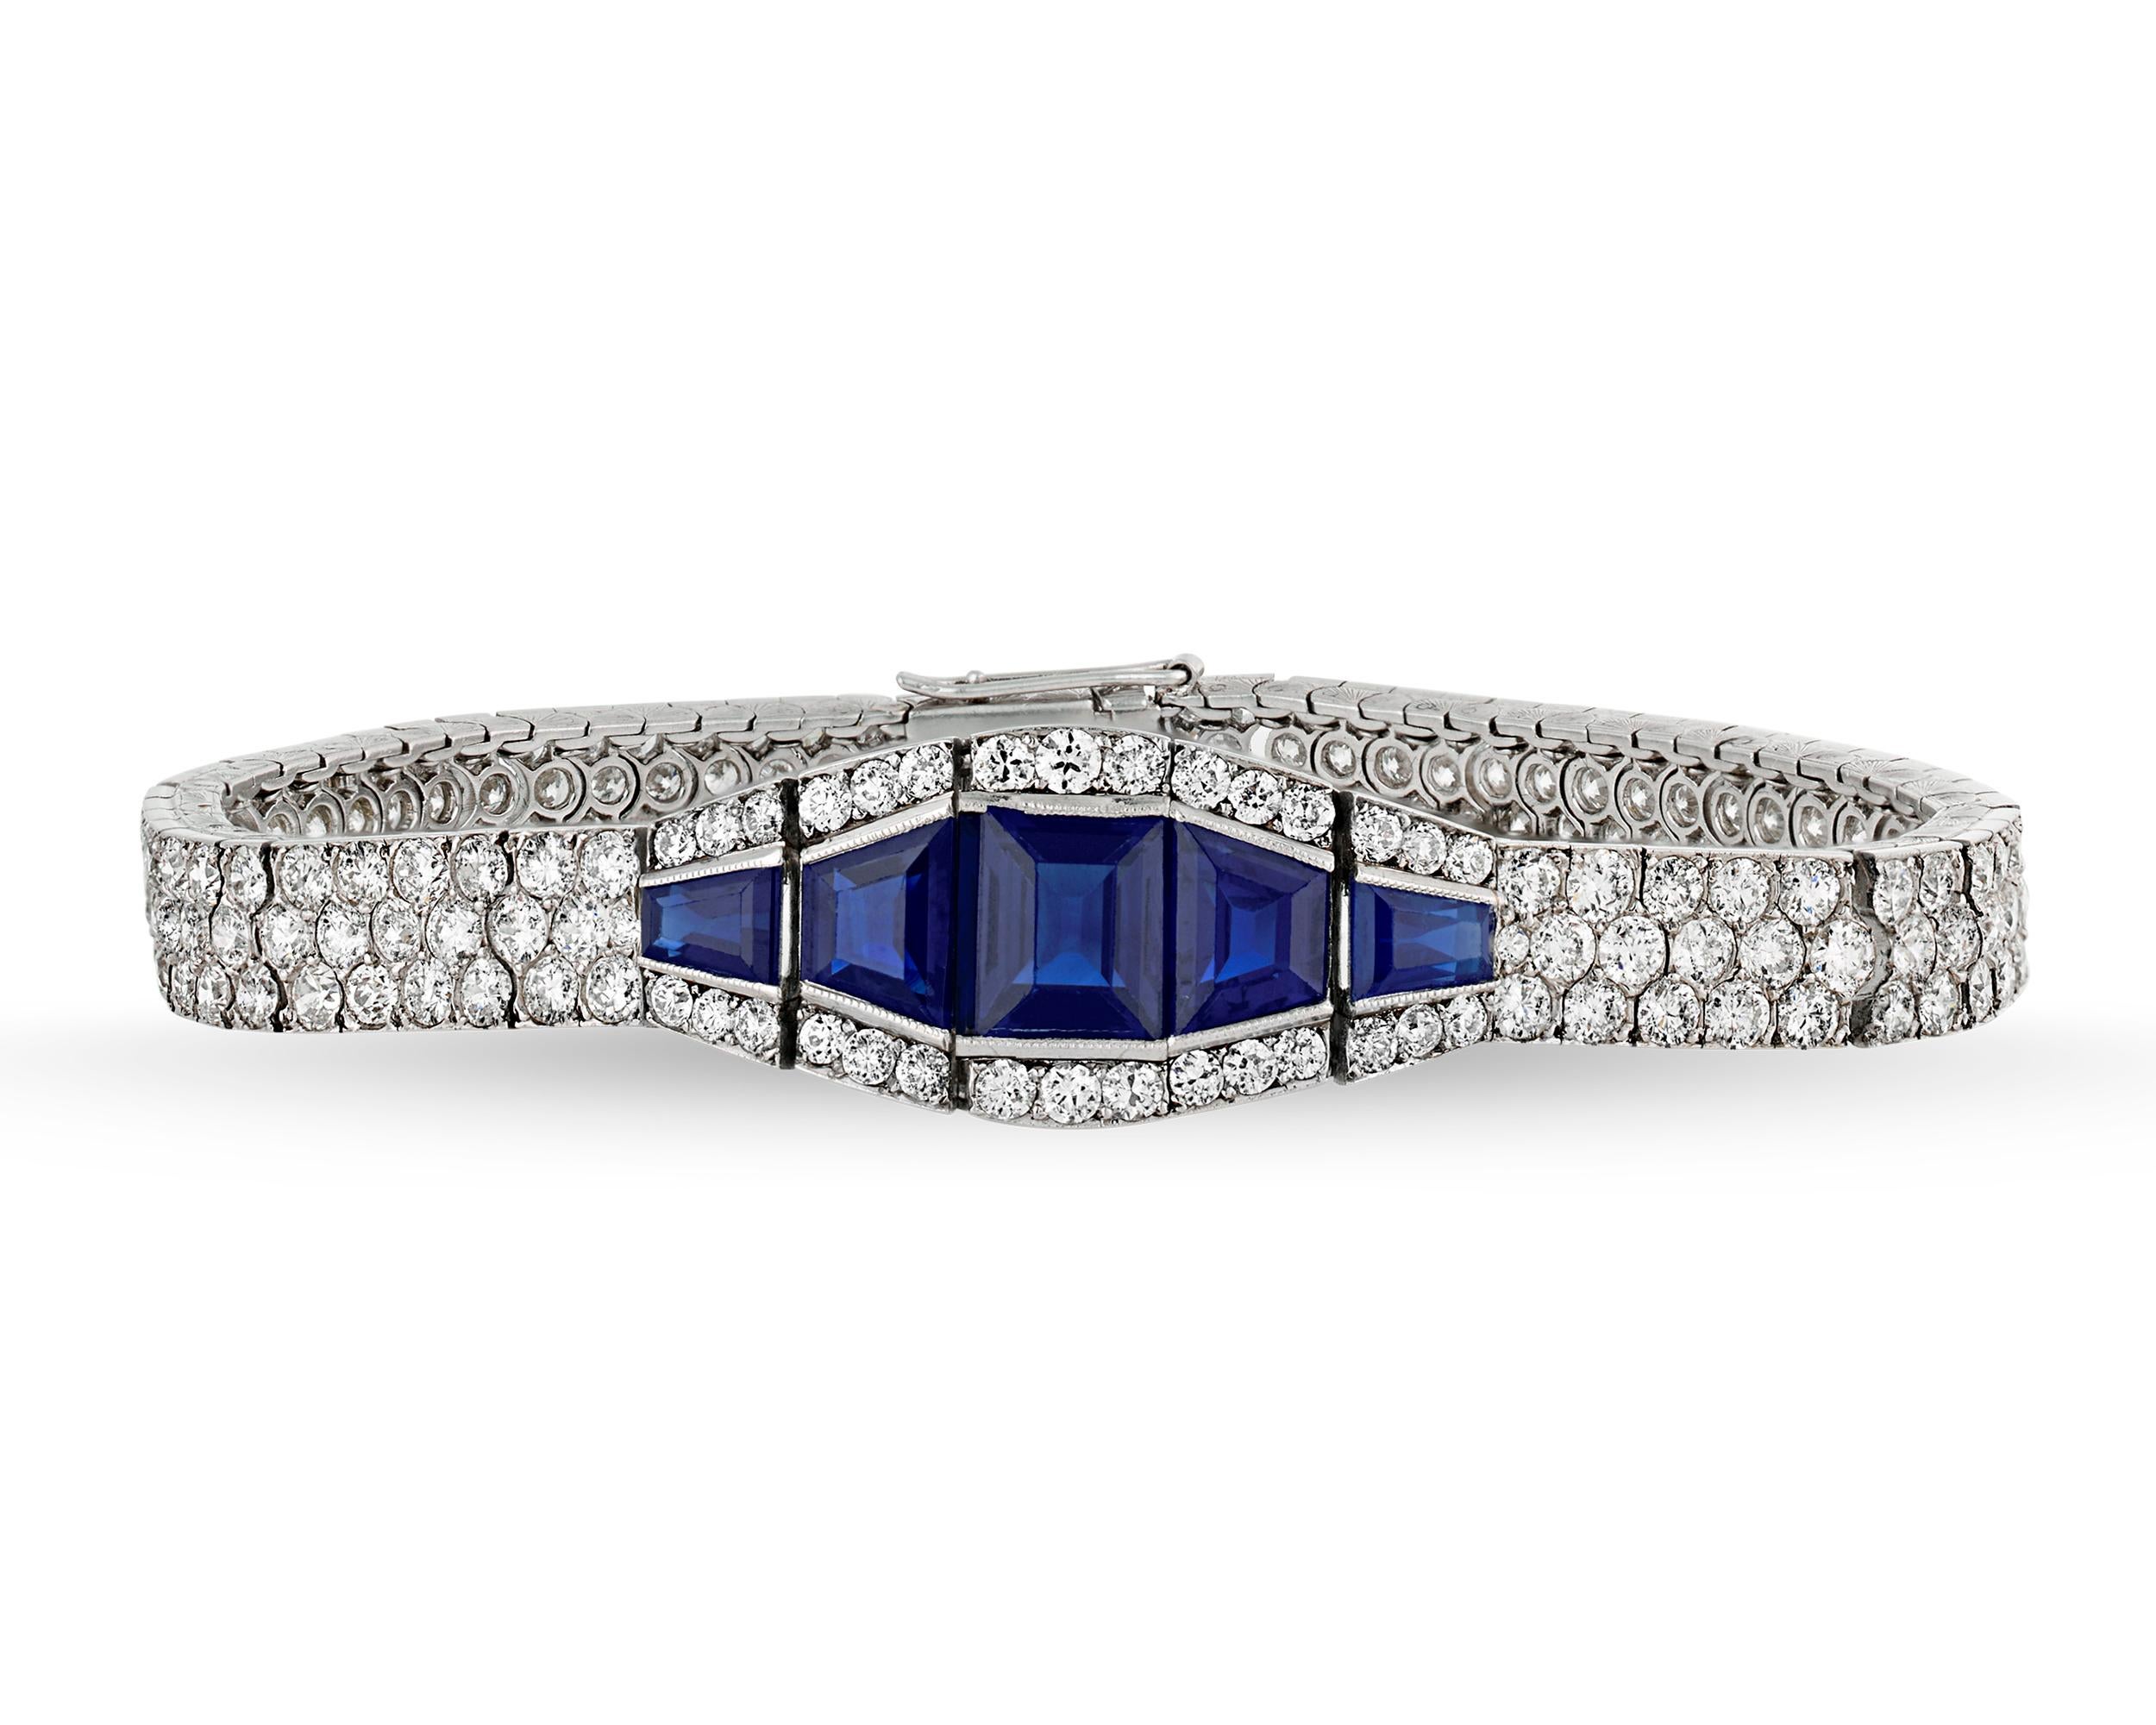 Ce spectaculaire bracelet en saphir incarne l'esprit épuré et élégant du design Art Déco. Le bracelet est incrusté d'un audacieux motif géométrique de diamants blancs totalisant environ 16,00 carats, tandis que de riches saphirs bleu royal